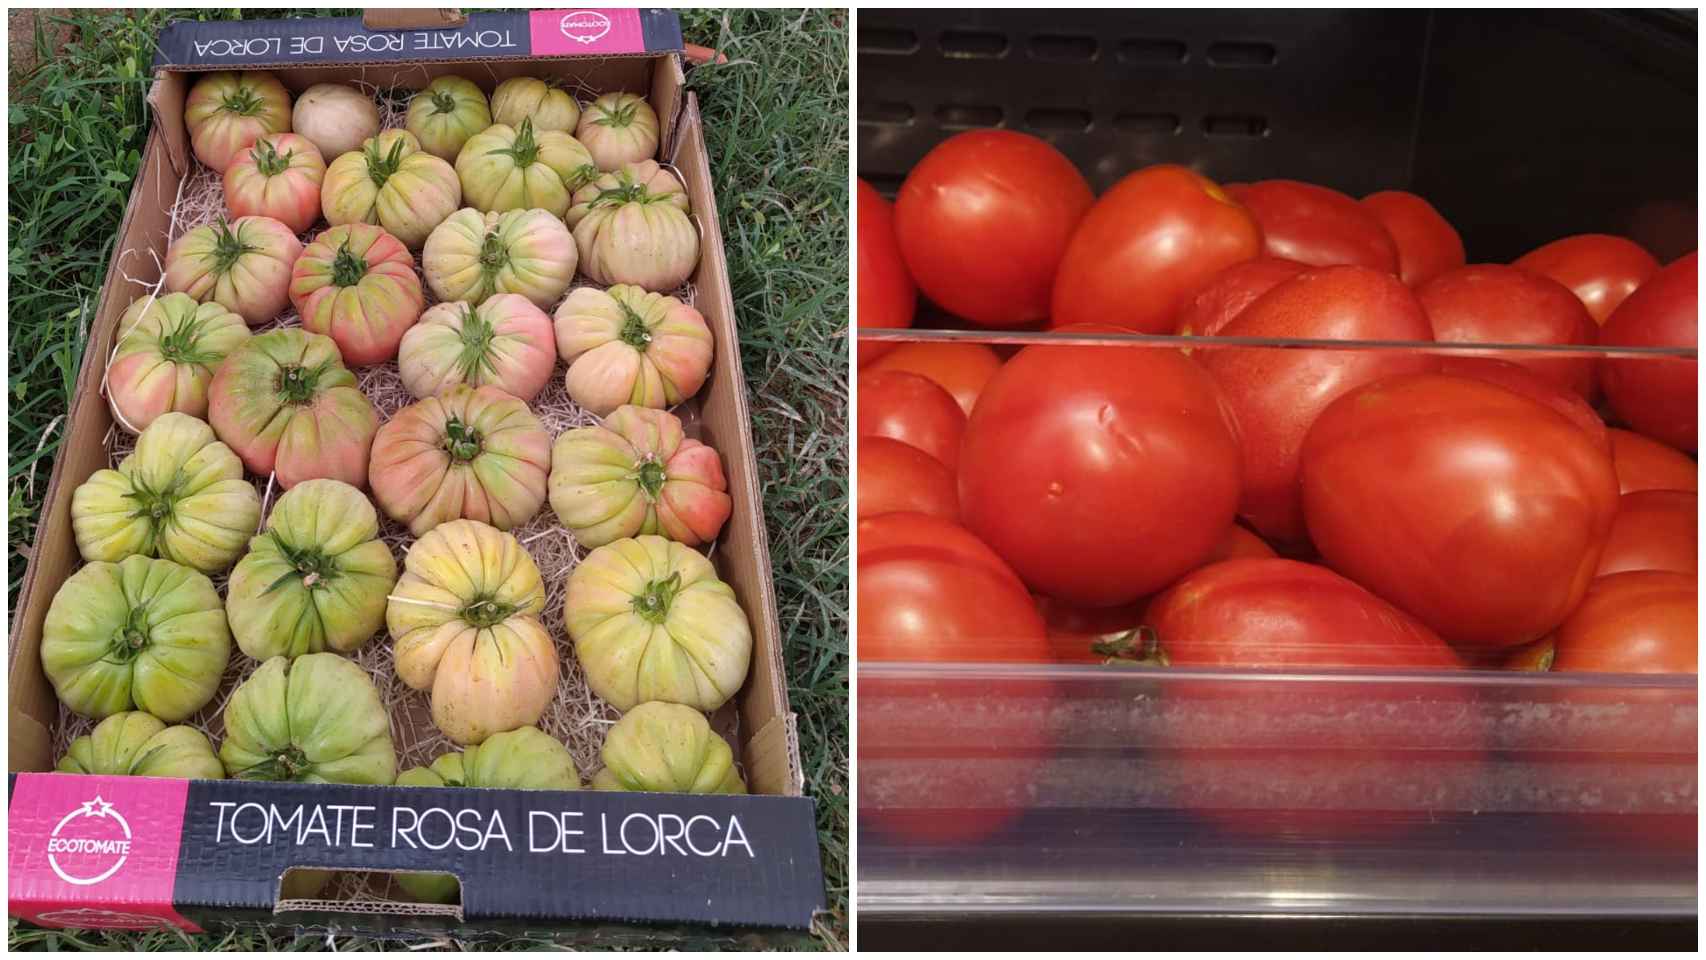 A la izquierda, tomates ecológicos, con distintos tamaños y colores. A la derecha, los convencionales, homogéneos.